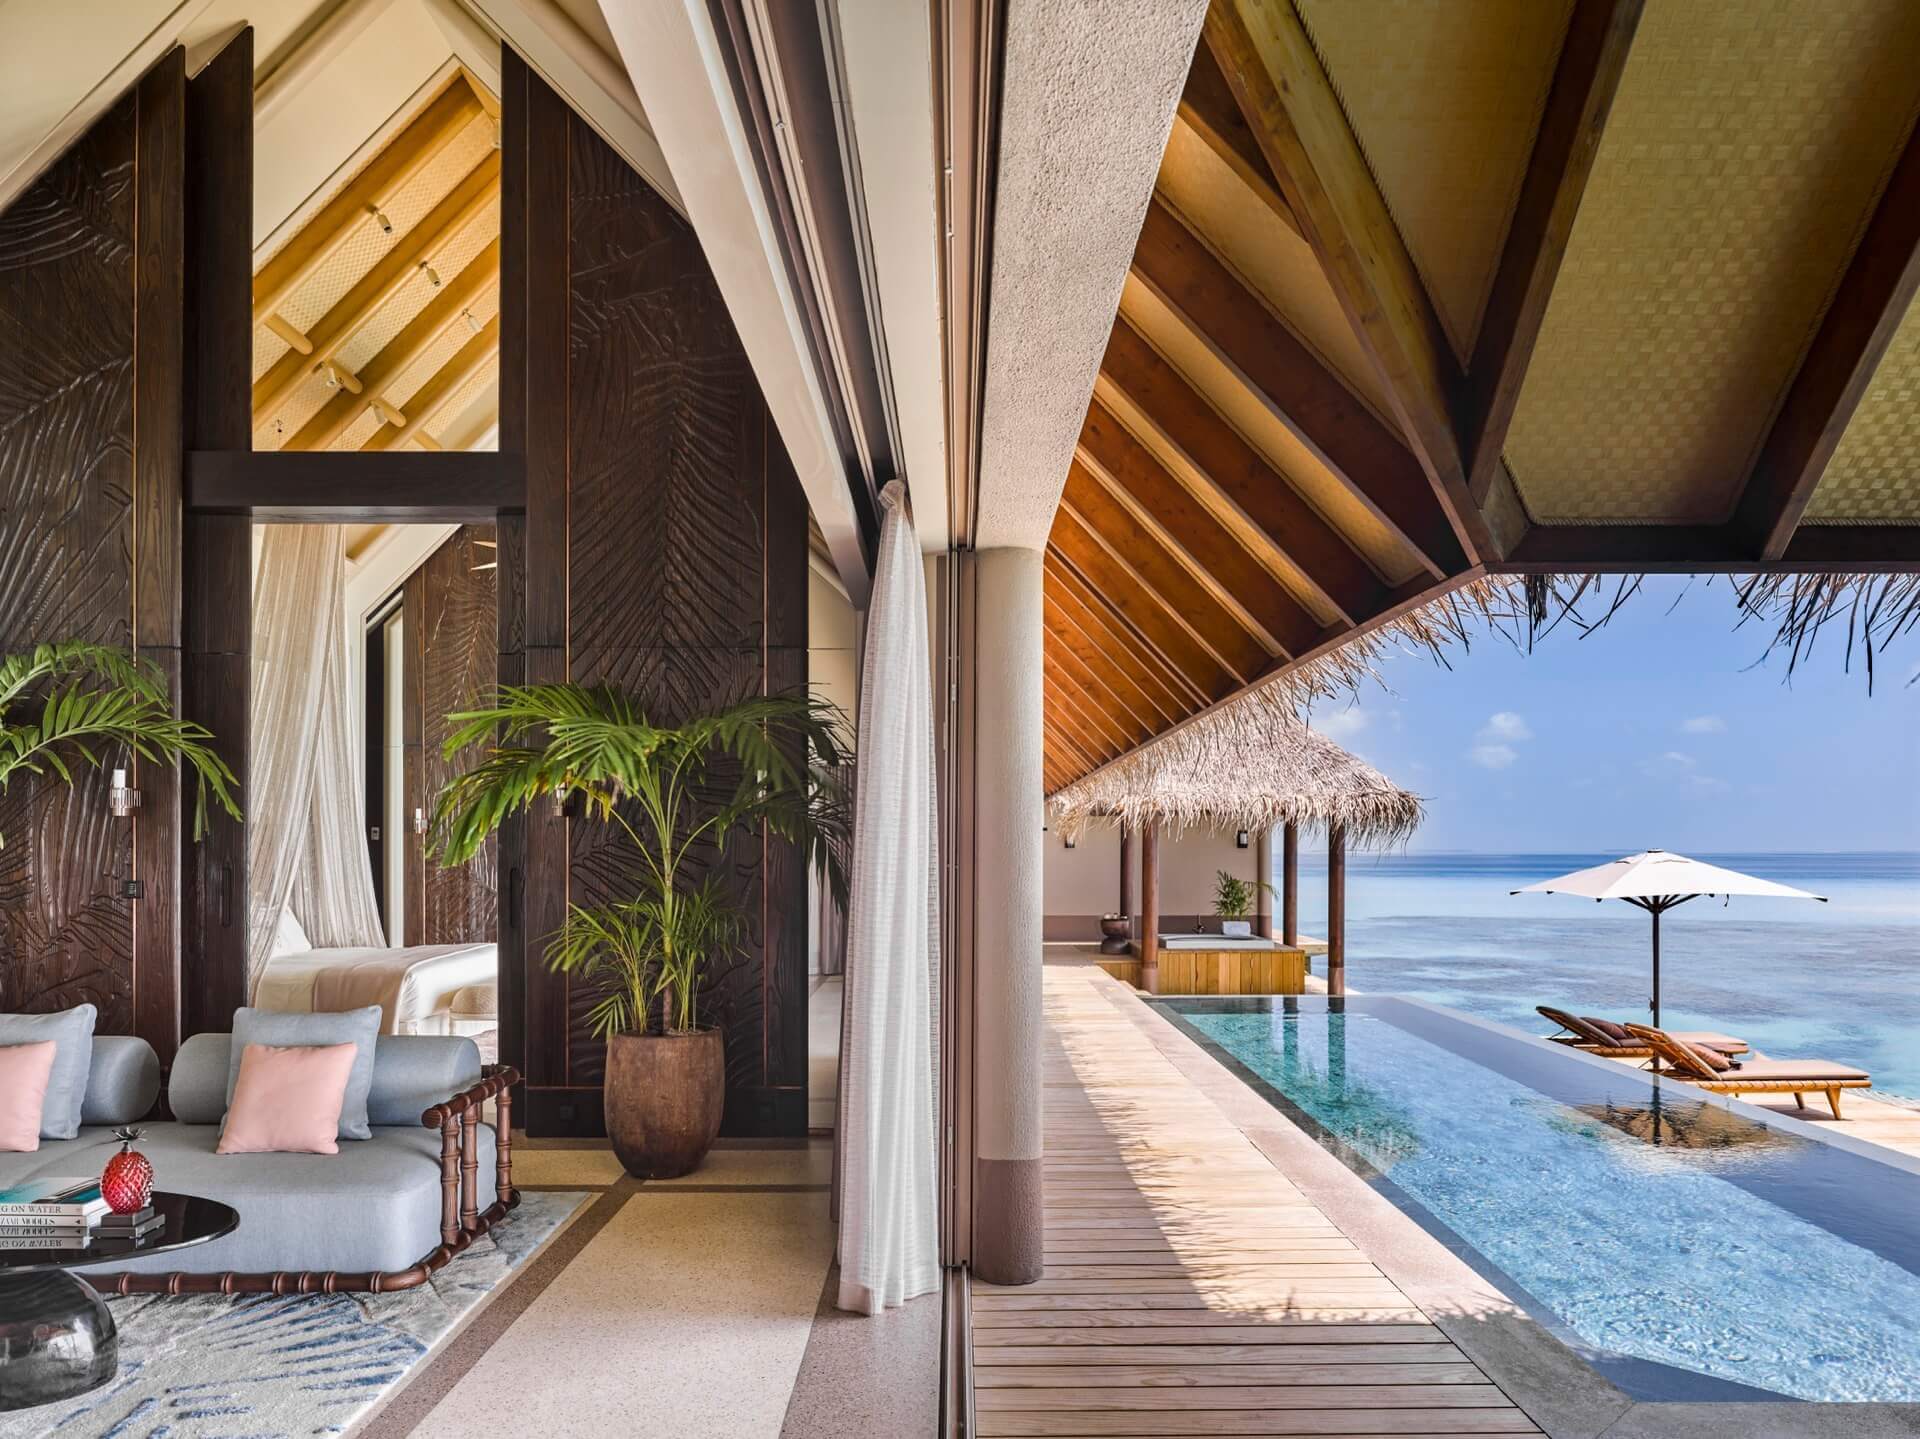 JOALI Maldives - Three Bedroom Ocean Residence with 2 Pools - Pool Area